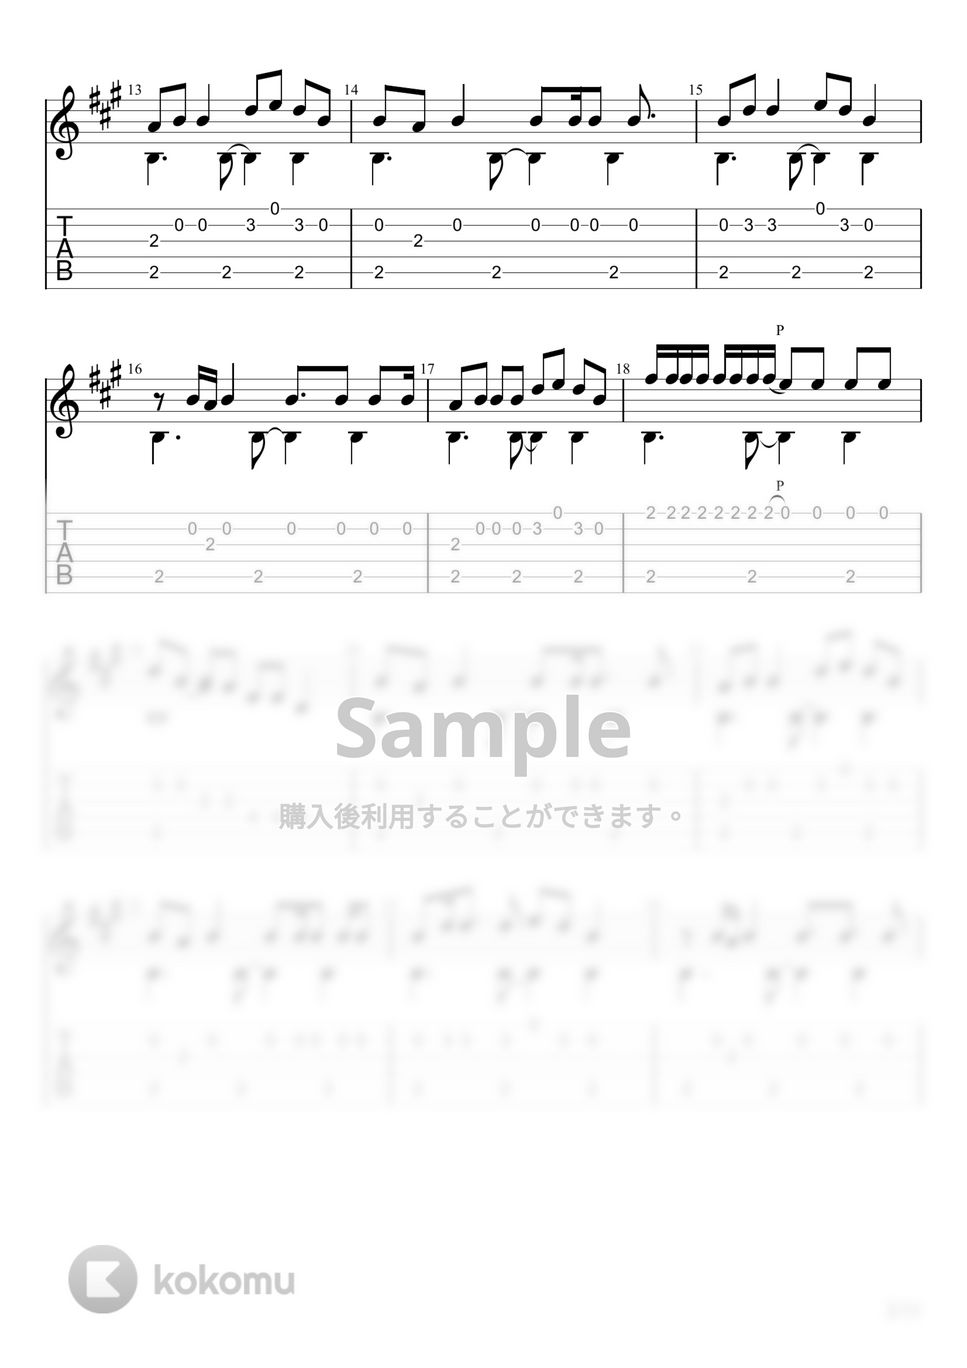 みきとP - いーあるふぁんくらぶ (ソロギター) by u3danchou